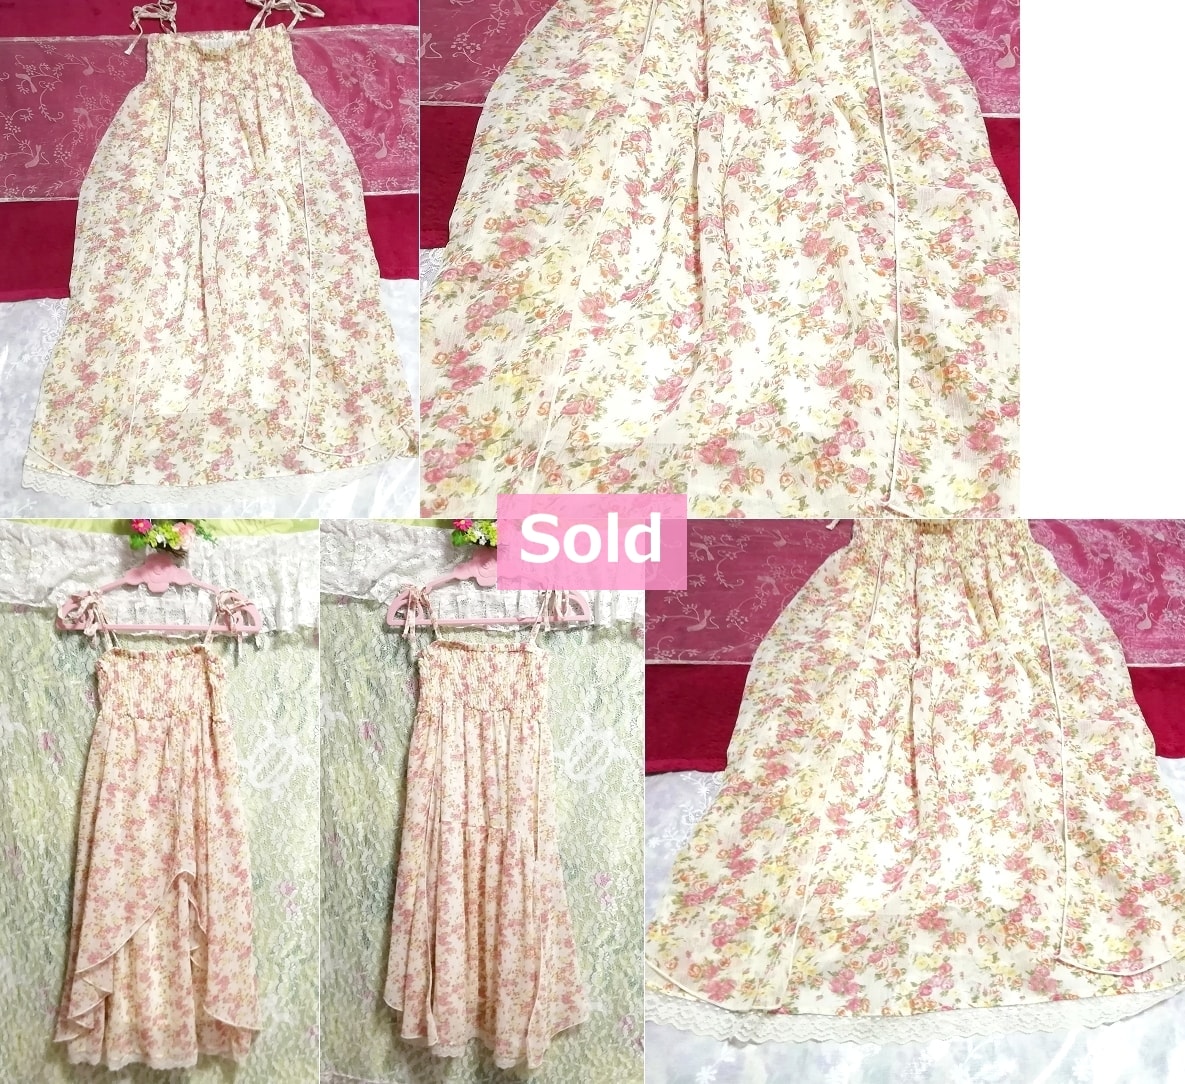 Robe camisole en mousseline de soie, motif floral blanc rose pâle, déshabillé en mousseline de soie, mode, mode féminine, camisole